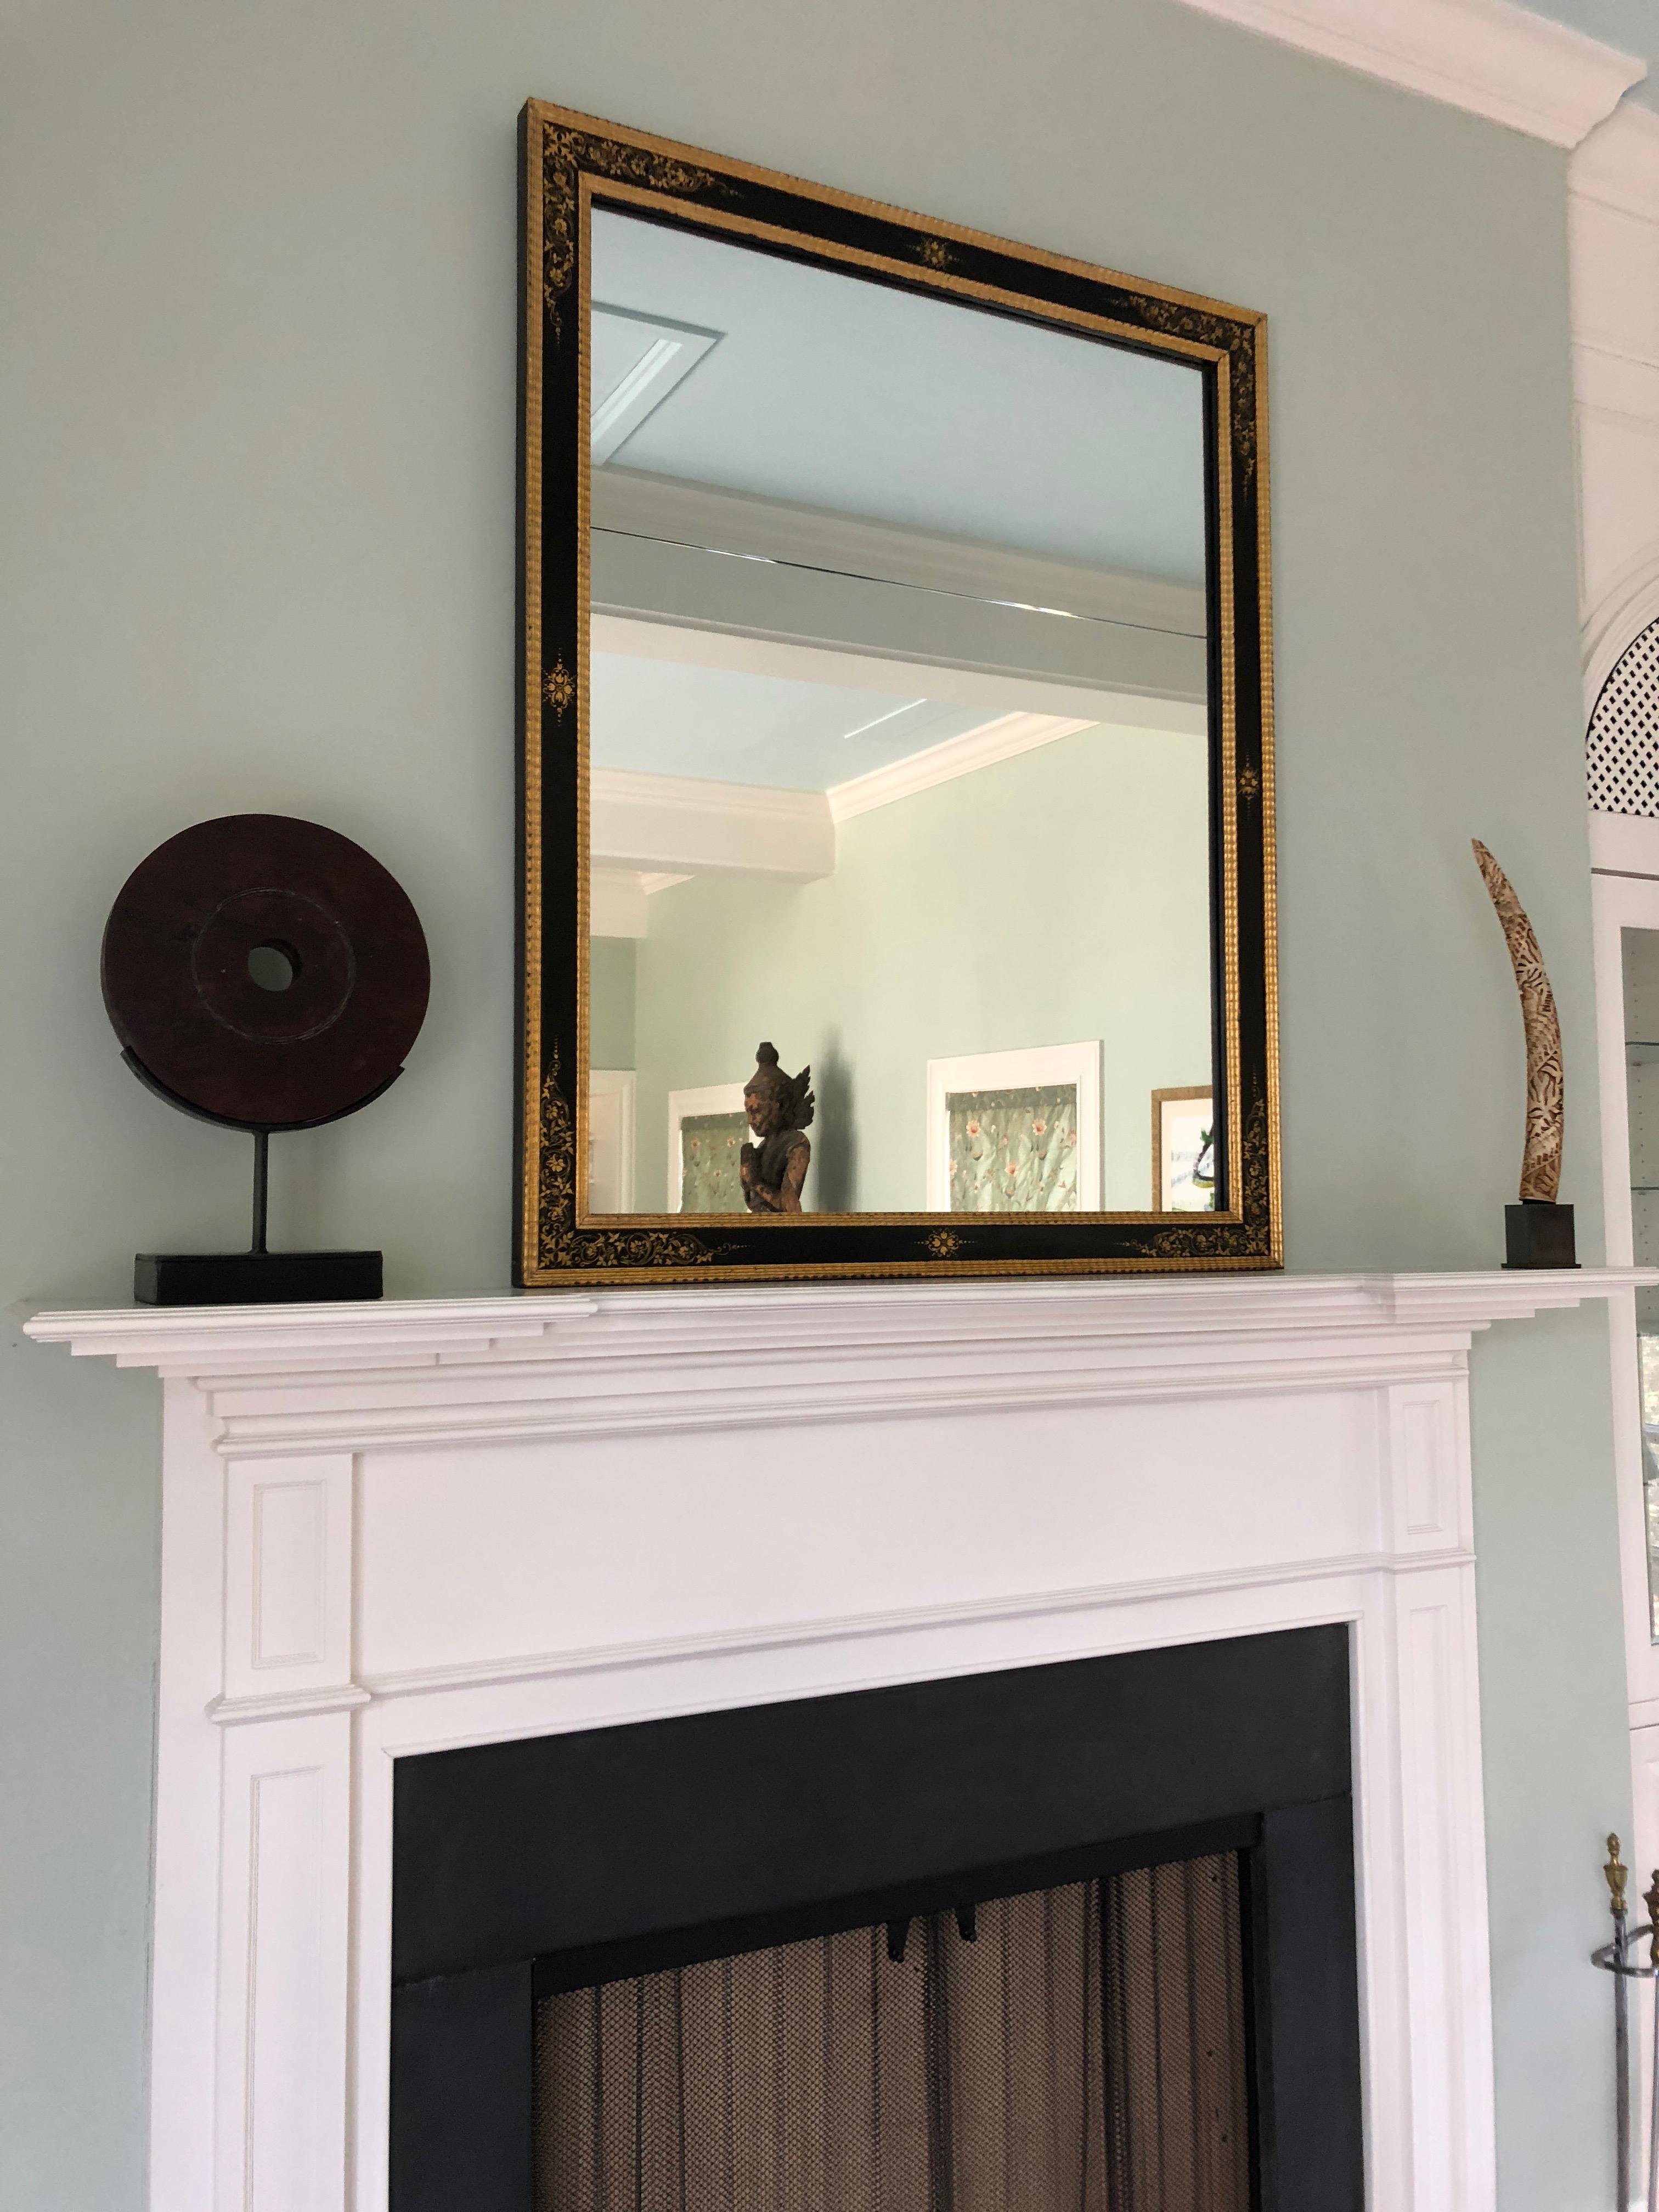 Très élégant miroir rectangulaire noir et or avec des bords en bois doré et de beaux motifs peints sur le cadre. Le miroir est en deux parties, comme c'est souvent le cas pour les grands miroirs anciens. Le miroir mesure 35,75 x 48 et le cadre est